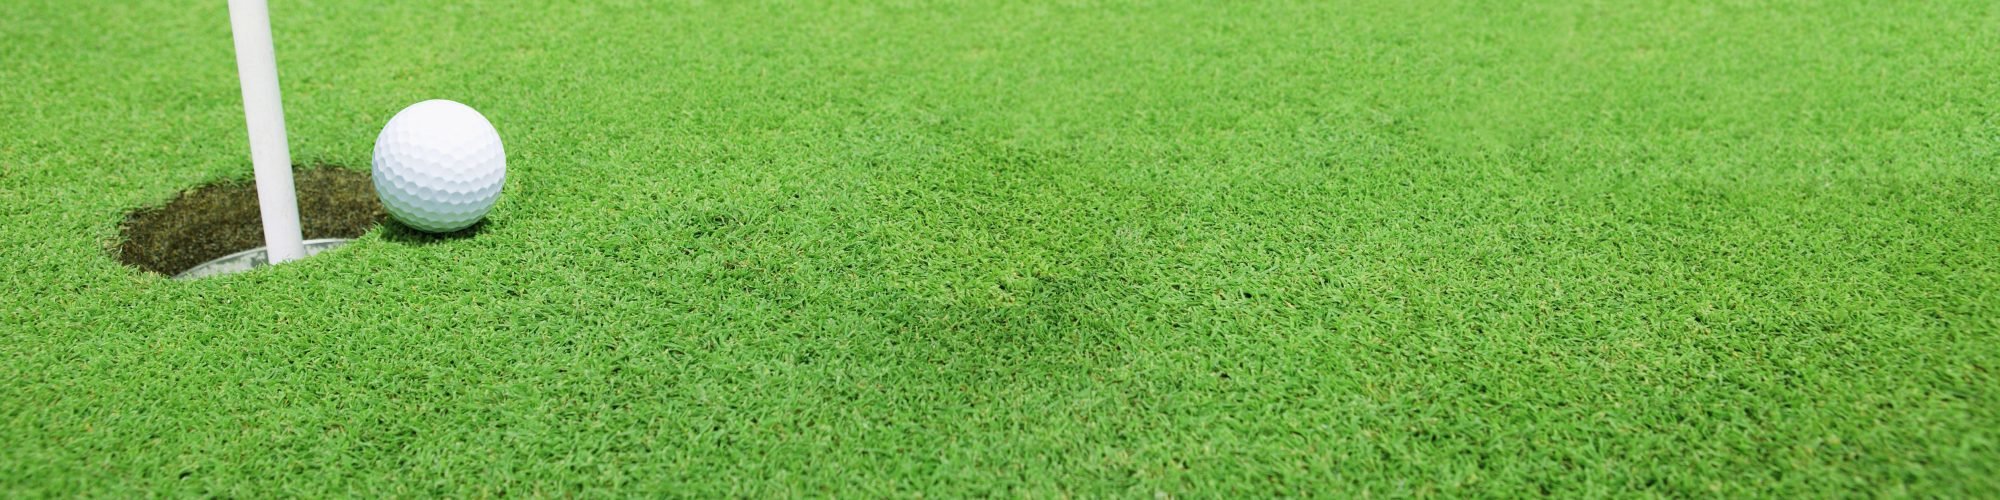 golf tournament with a golf ball on green grass